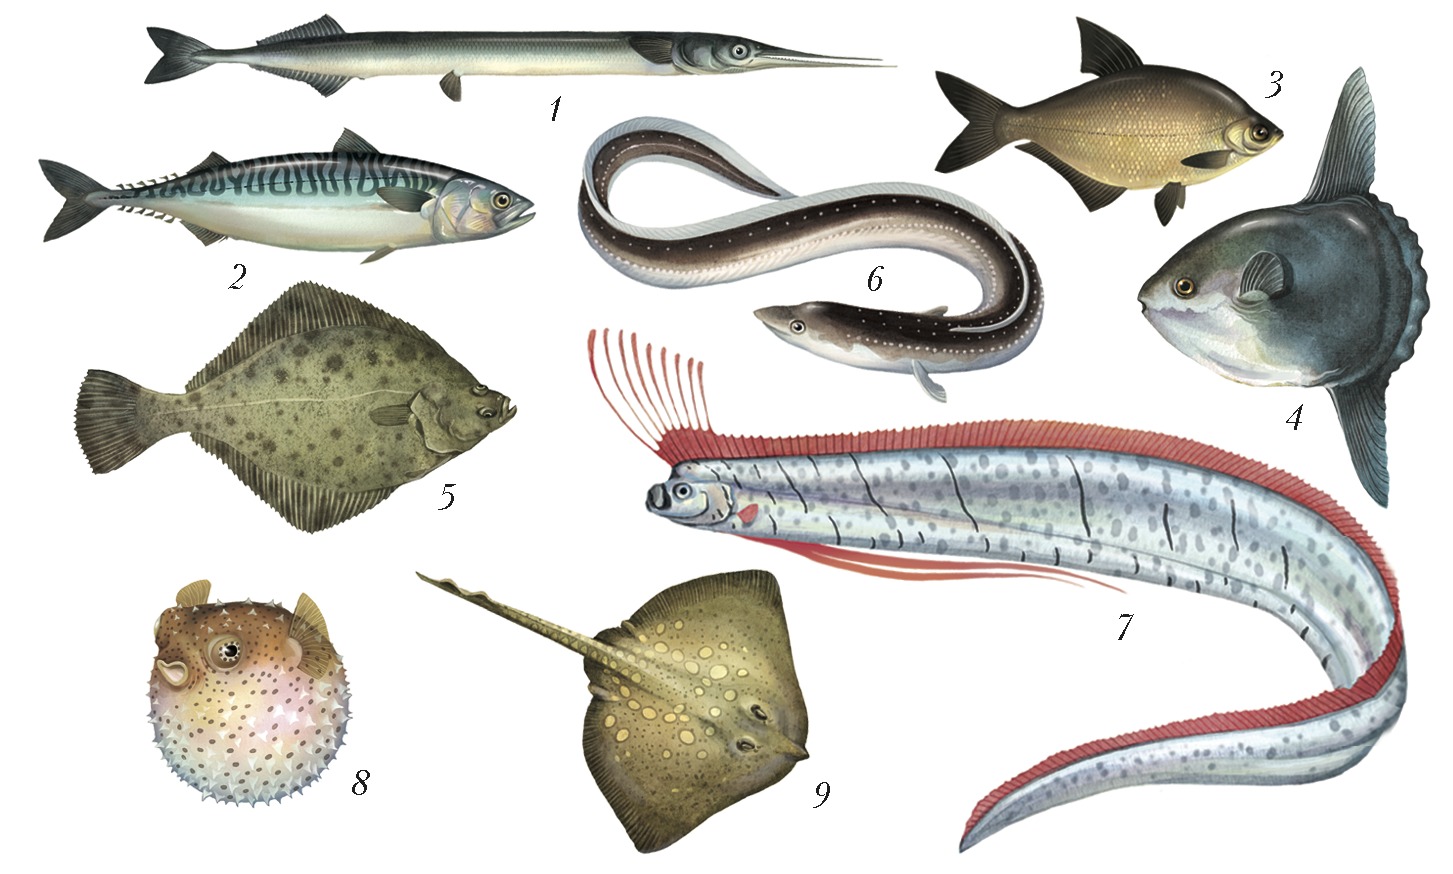 рыбы морские и речные фото с названиями